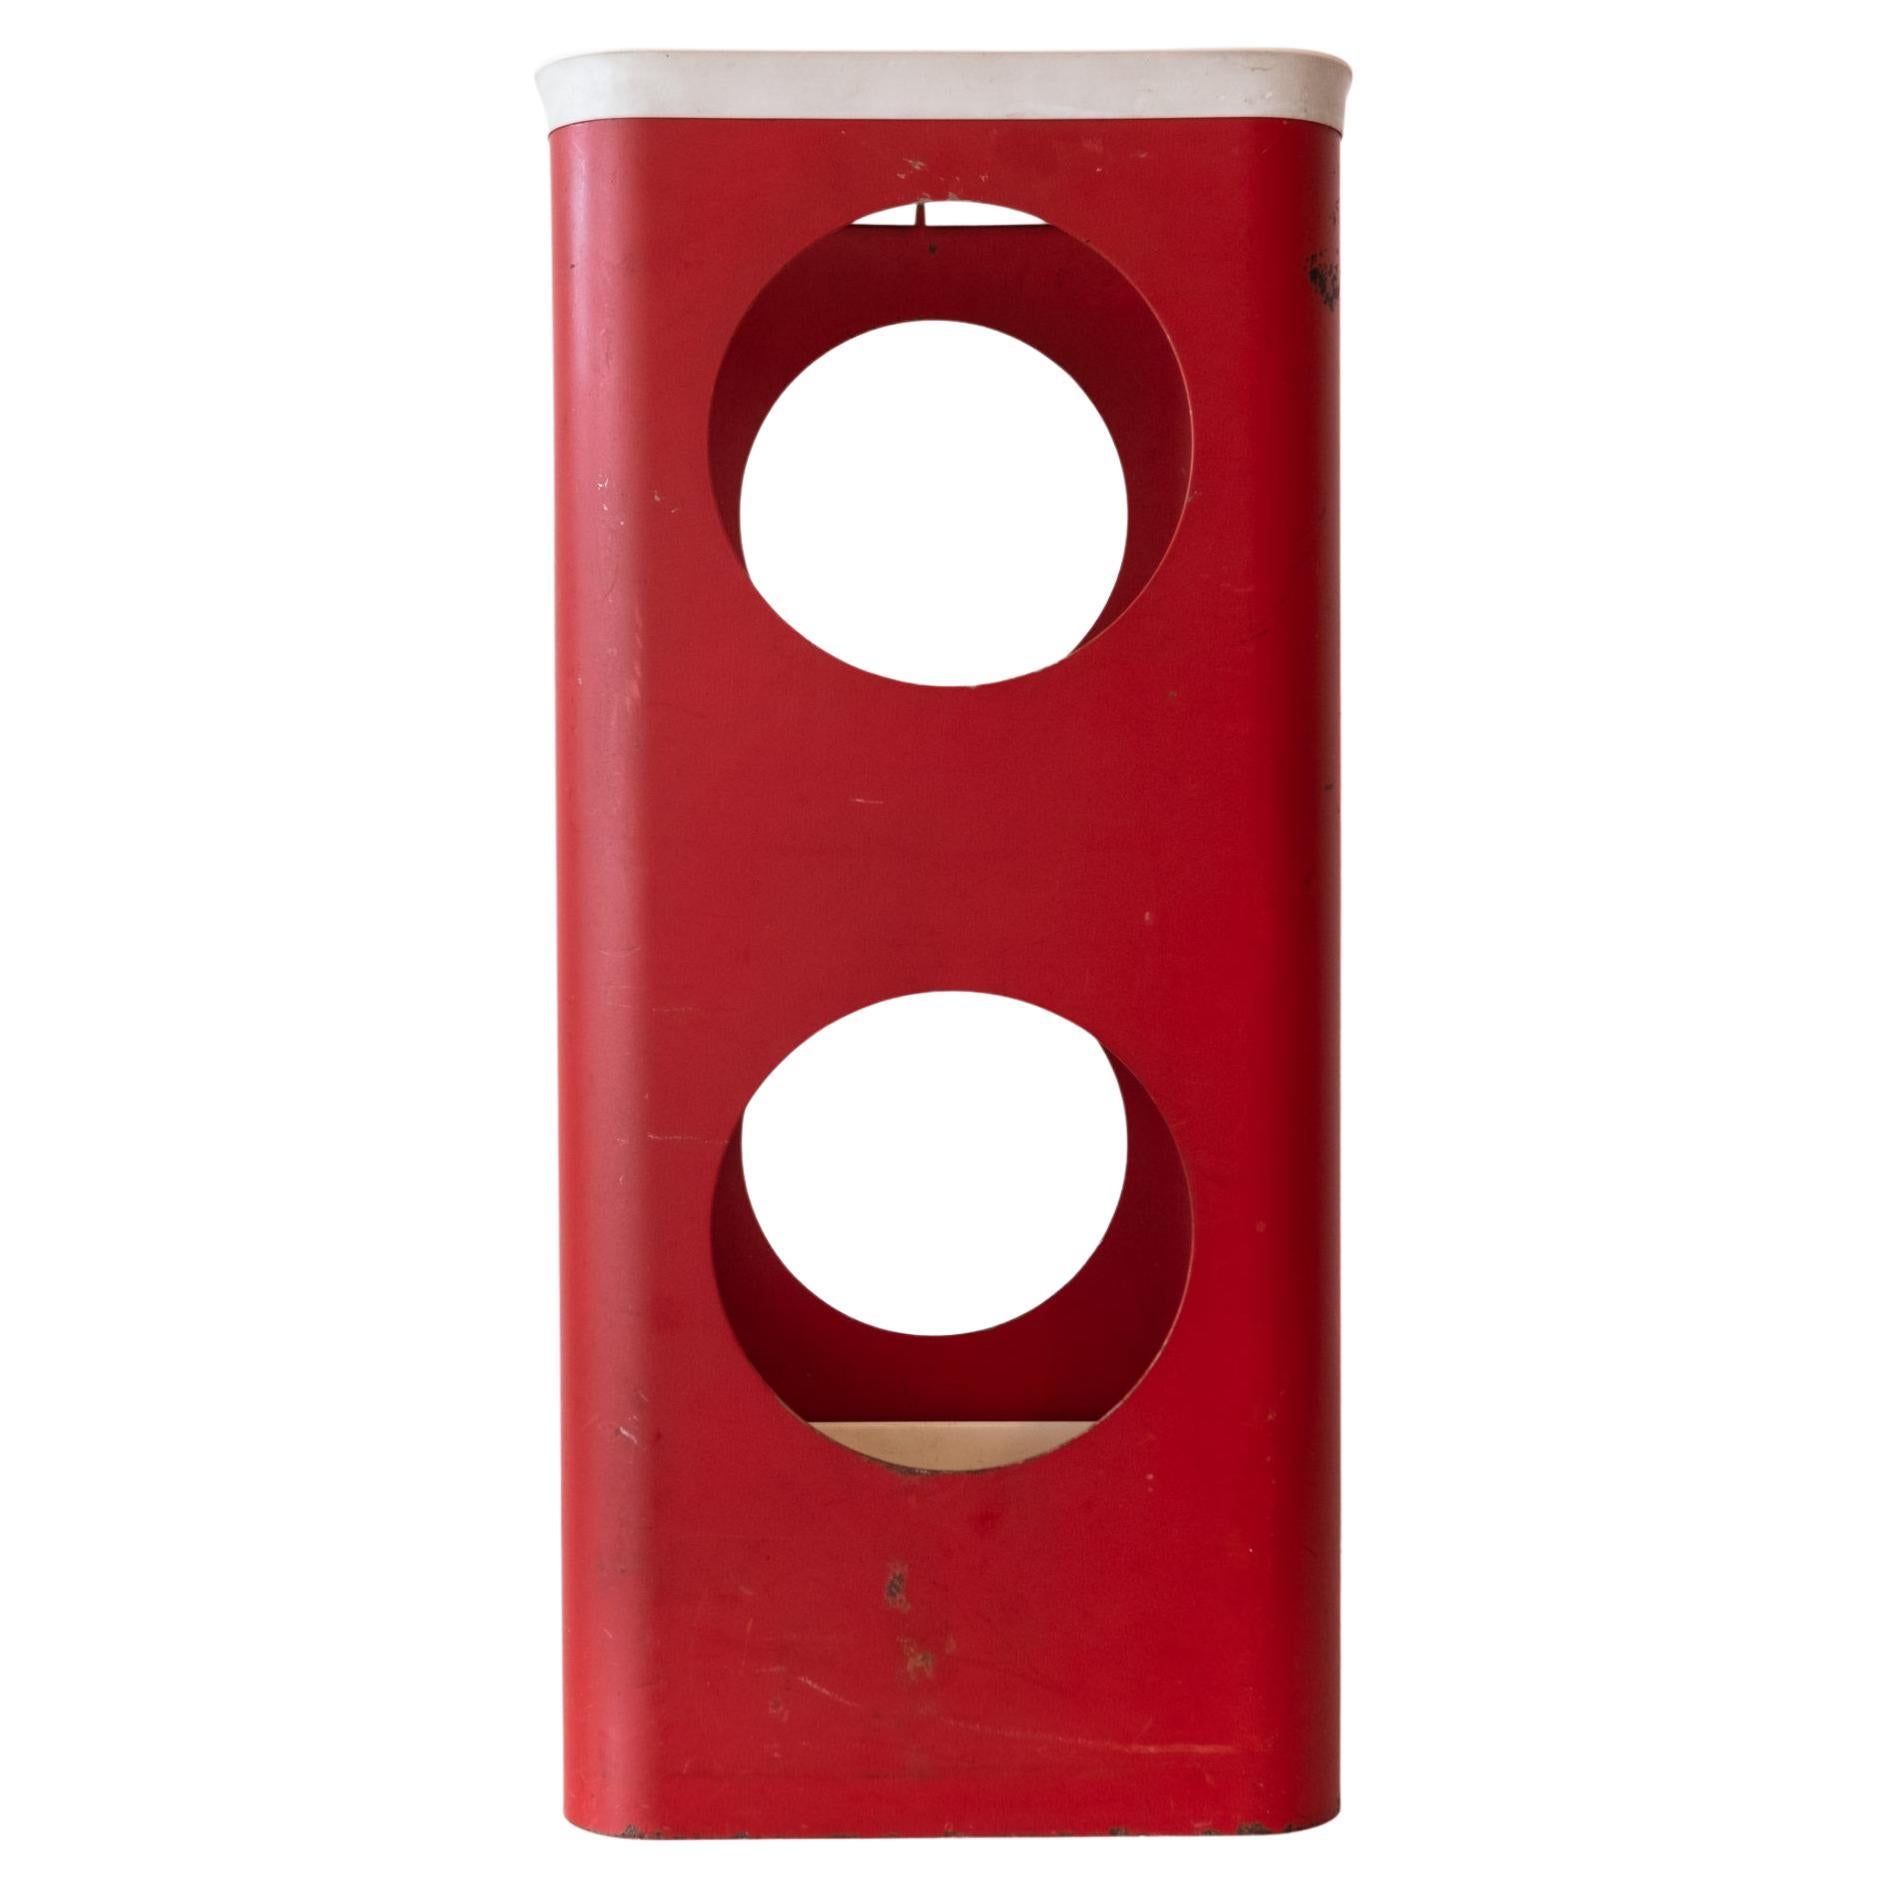 Porte-parapluies Bauhaus en métal perforé rouge